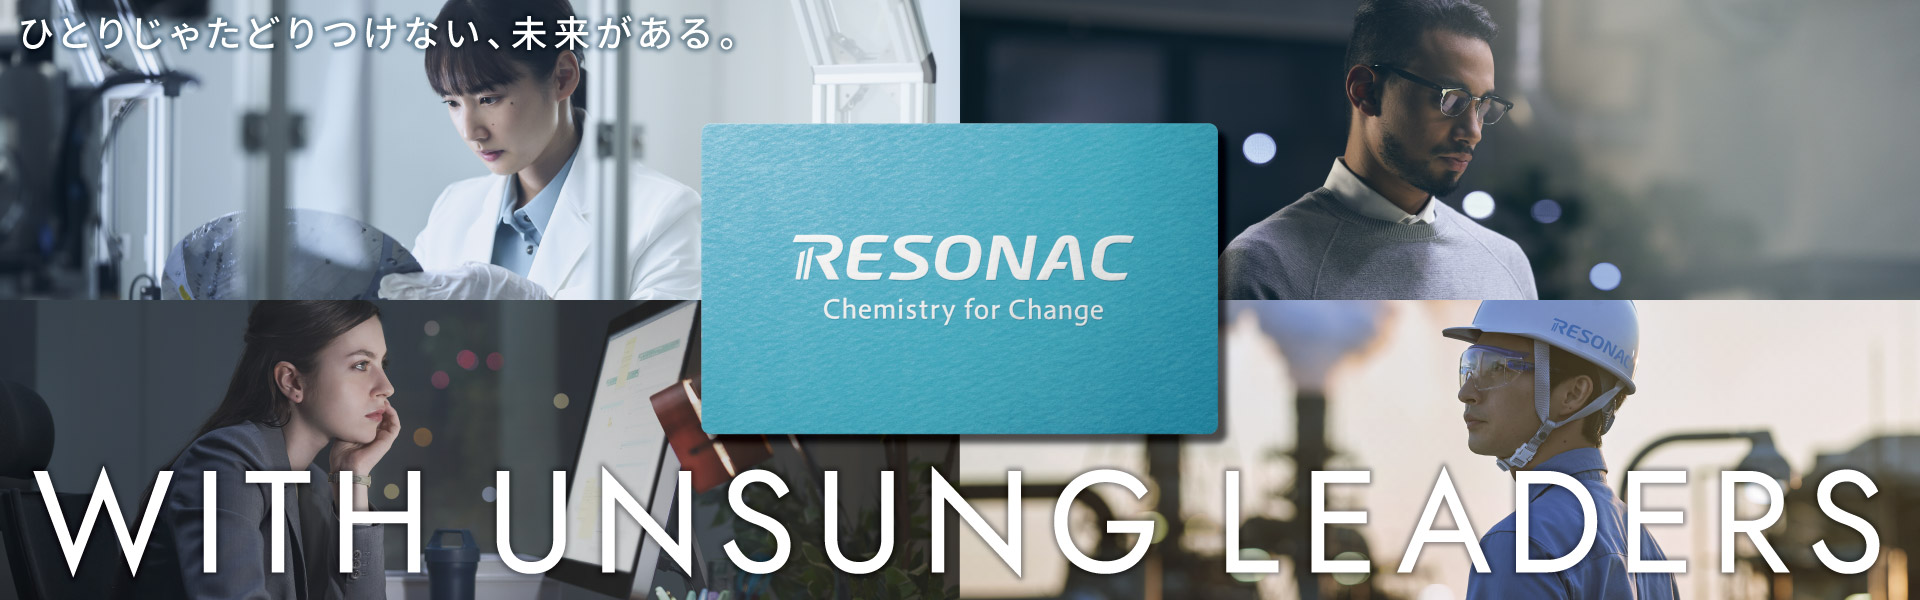 RESONAC Chemistry for Change ひとりじゃたどりつけない、未来がある。 WITH UNSUNG LEADERS